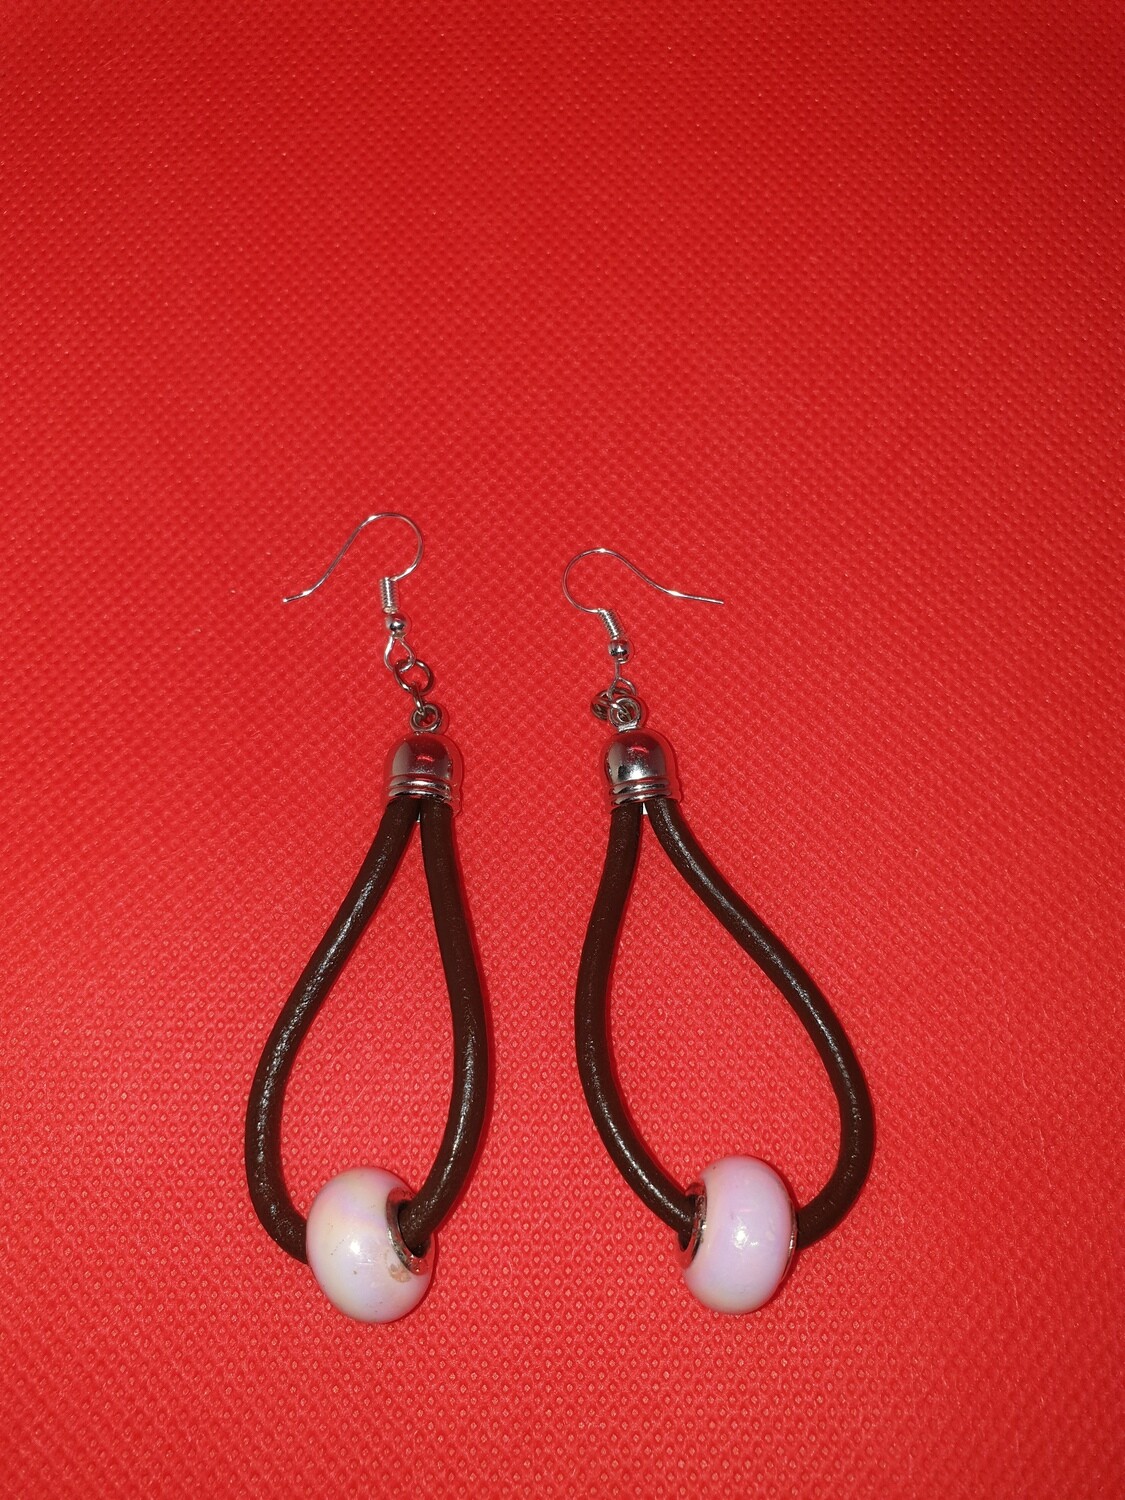 Leather earrings pink hoop